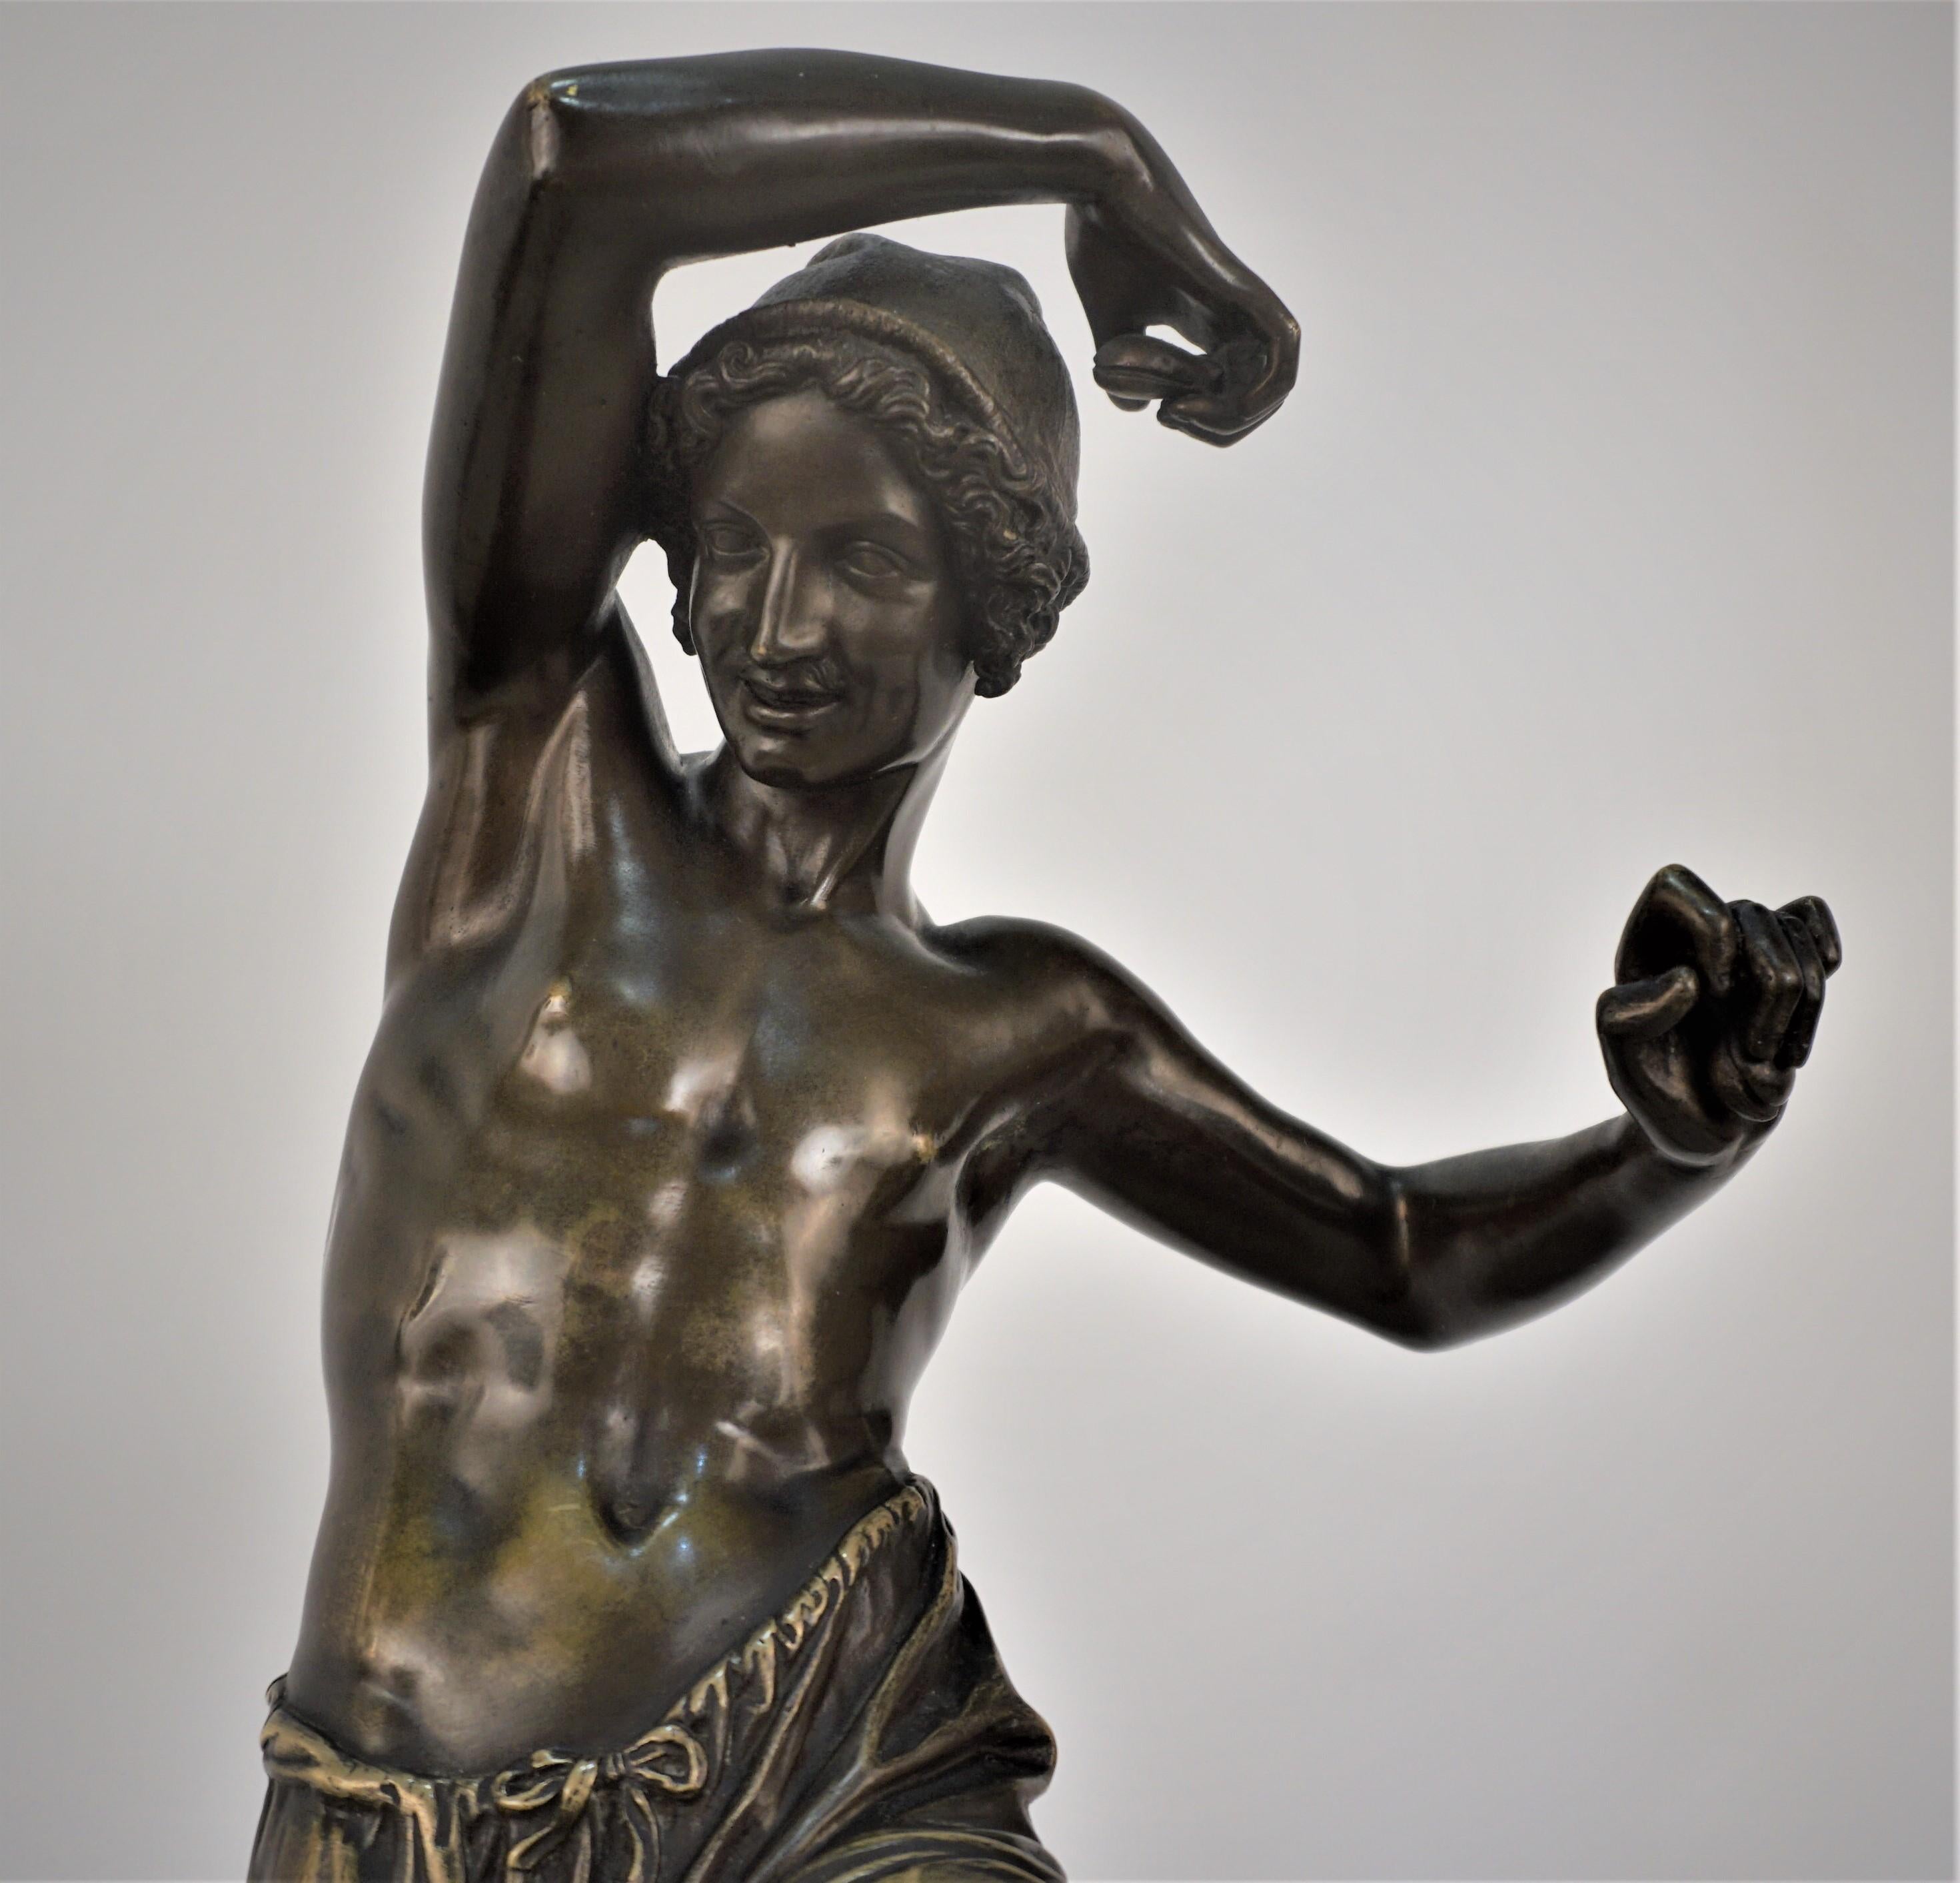 Danseuse napolitaine en bronze avec castagnettes, marquée Duret F.
D'après Francisque Joseph Duret (français, 1805-1865)
Moulée par Delafontaine à partir d'un moule de Francisque Joseph Duret.